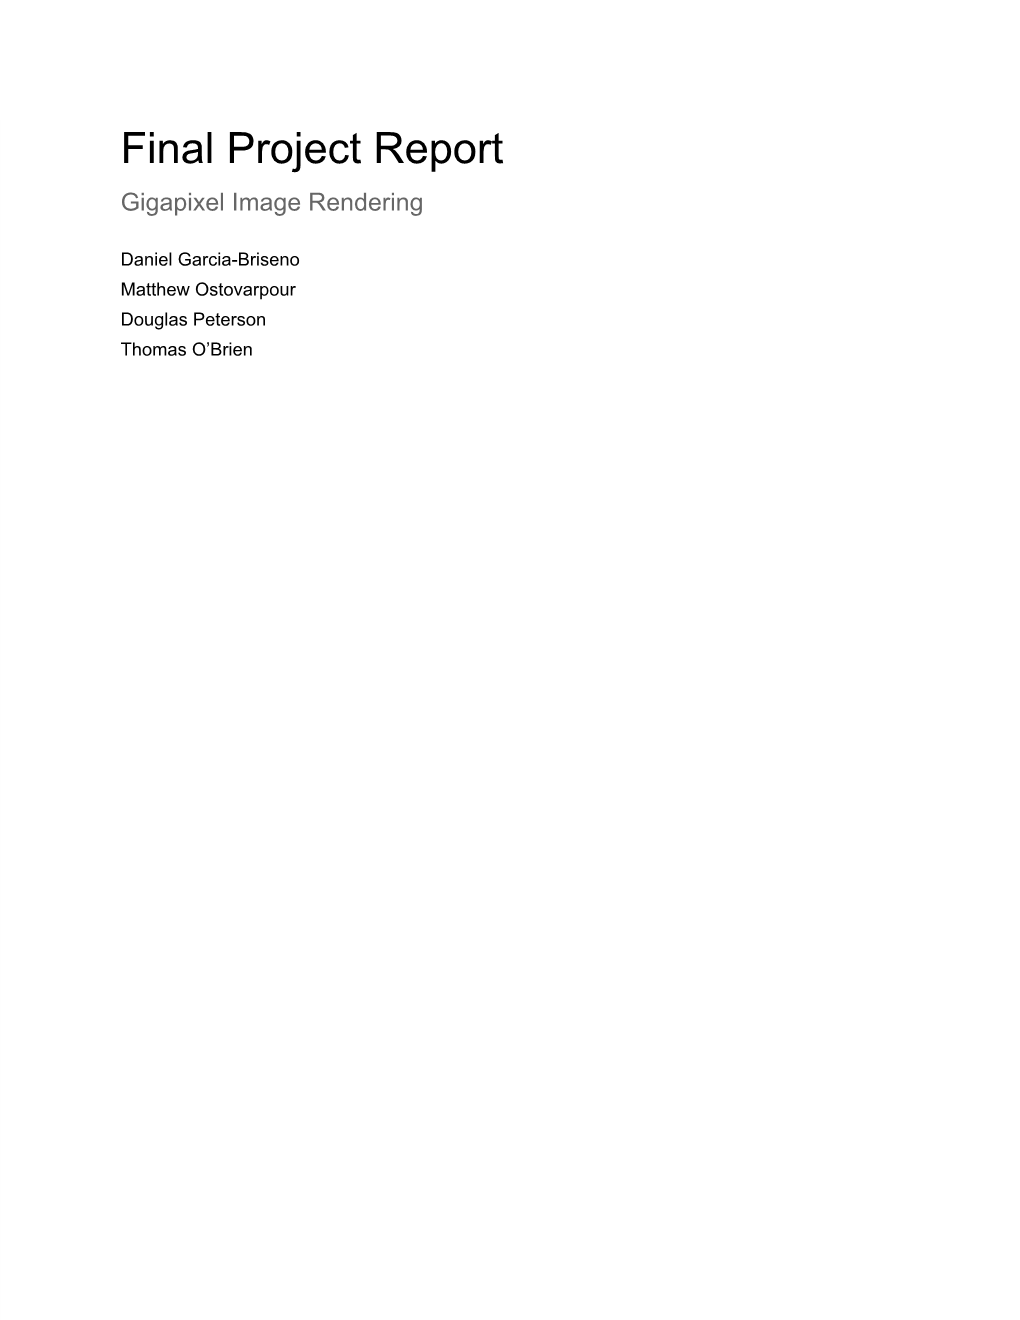 Final Project Report Gigapixel Image Rendering